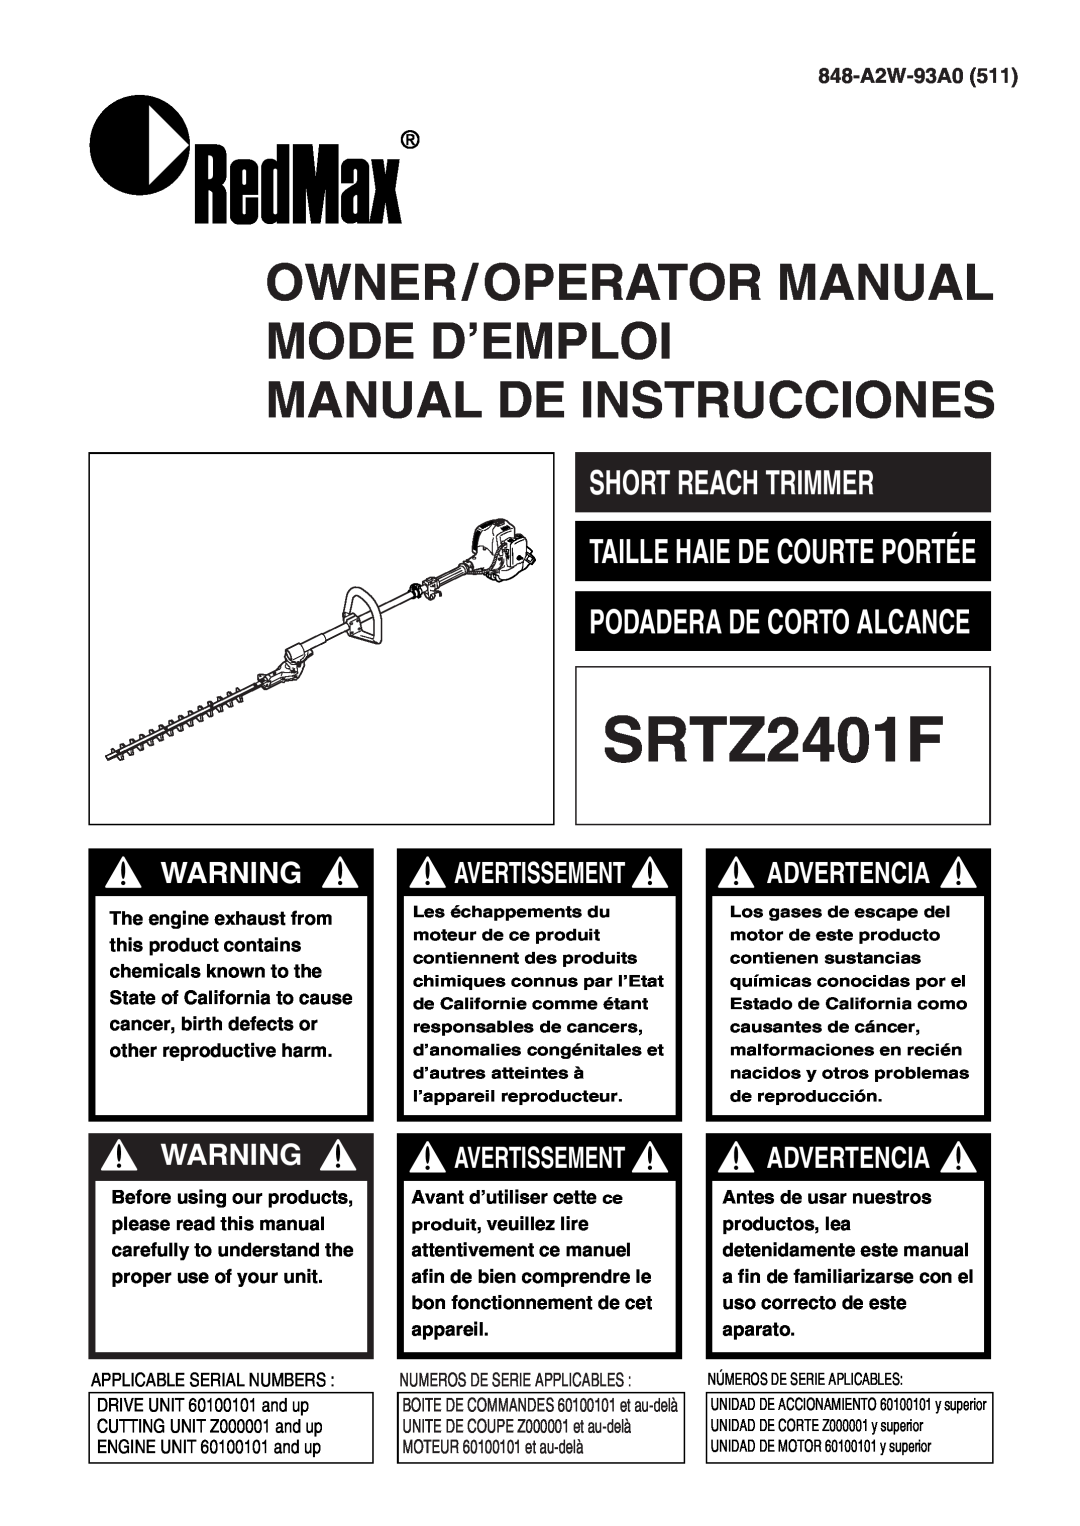 RedMax SRTZ2401F manual Short Reach Trimmer, Avertissement, Owner/Operator Manual Mode D’Emploi Manual De Instrucciones 